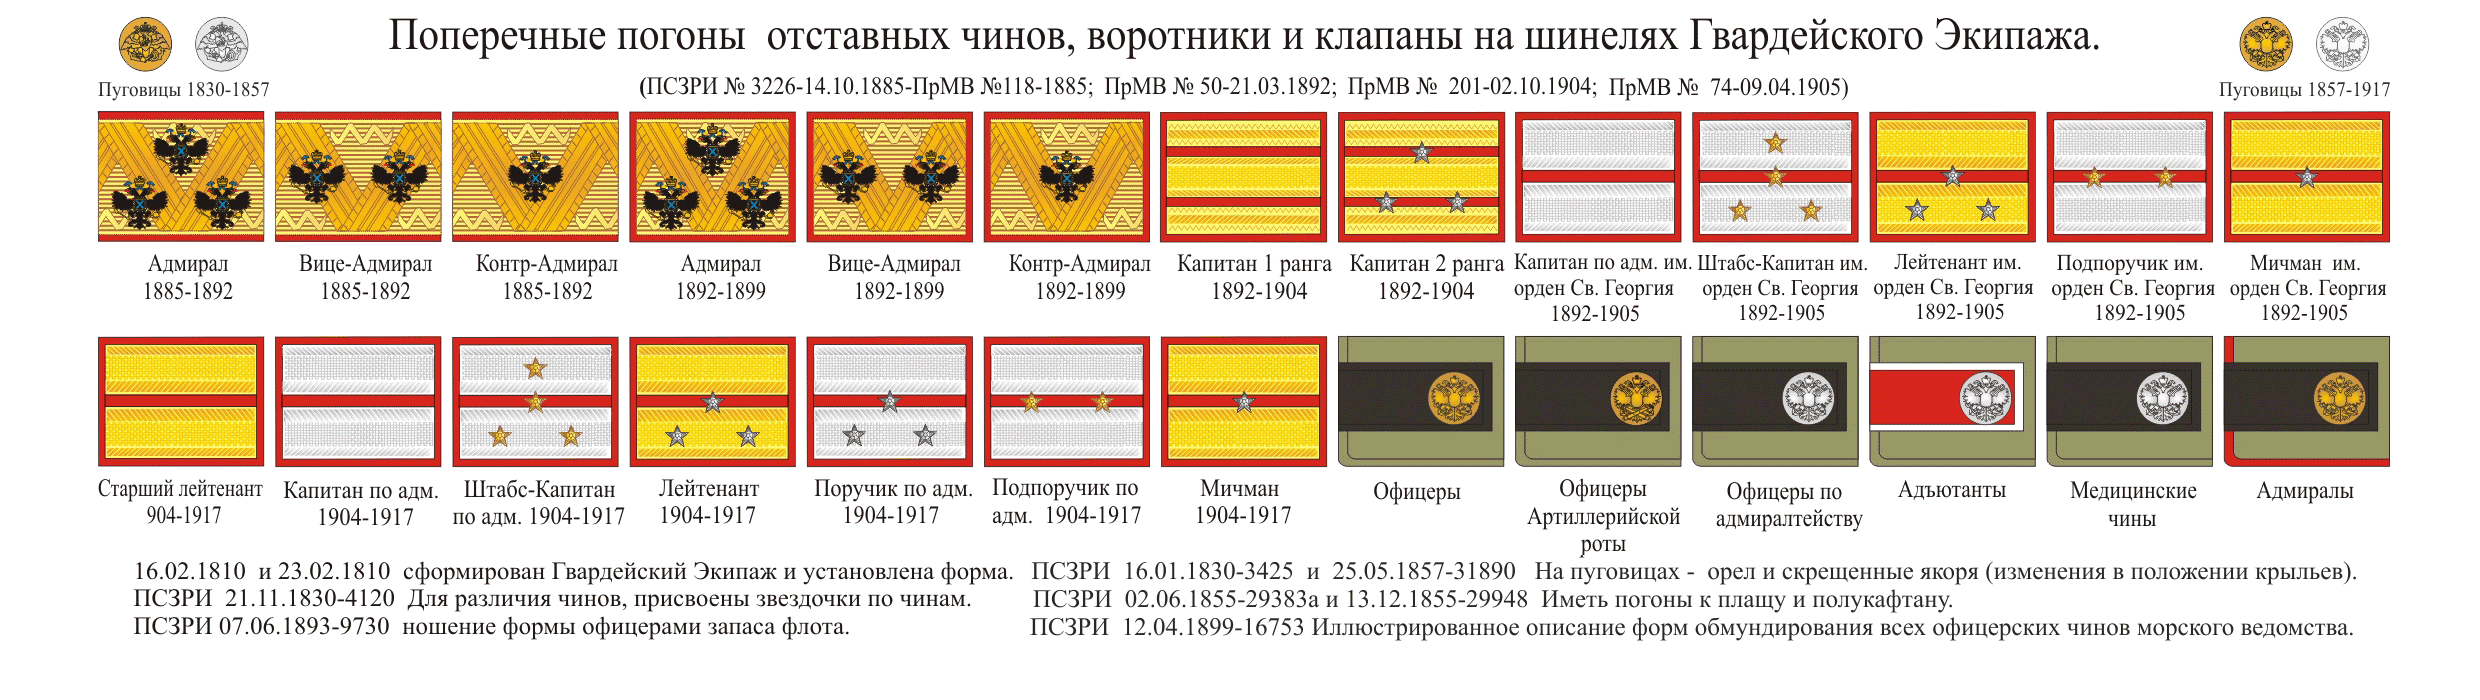 Состав полка российской империи